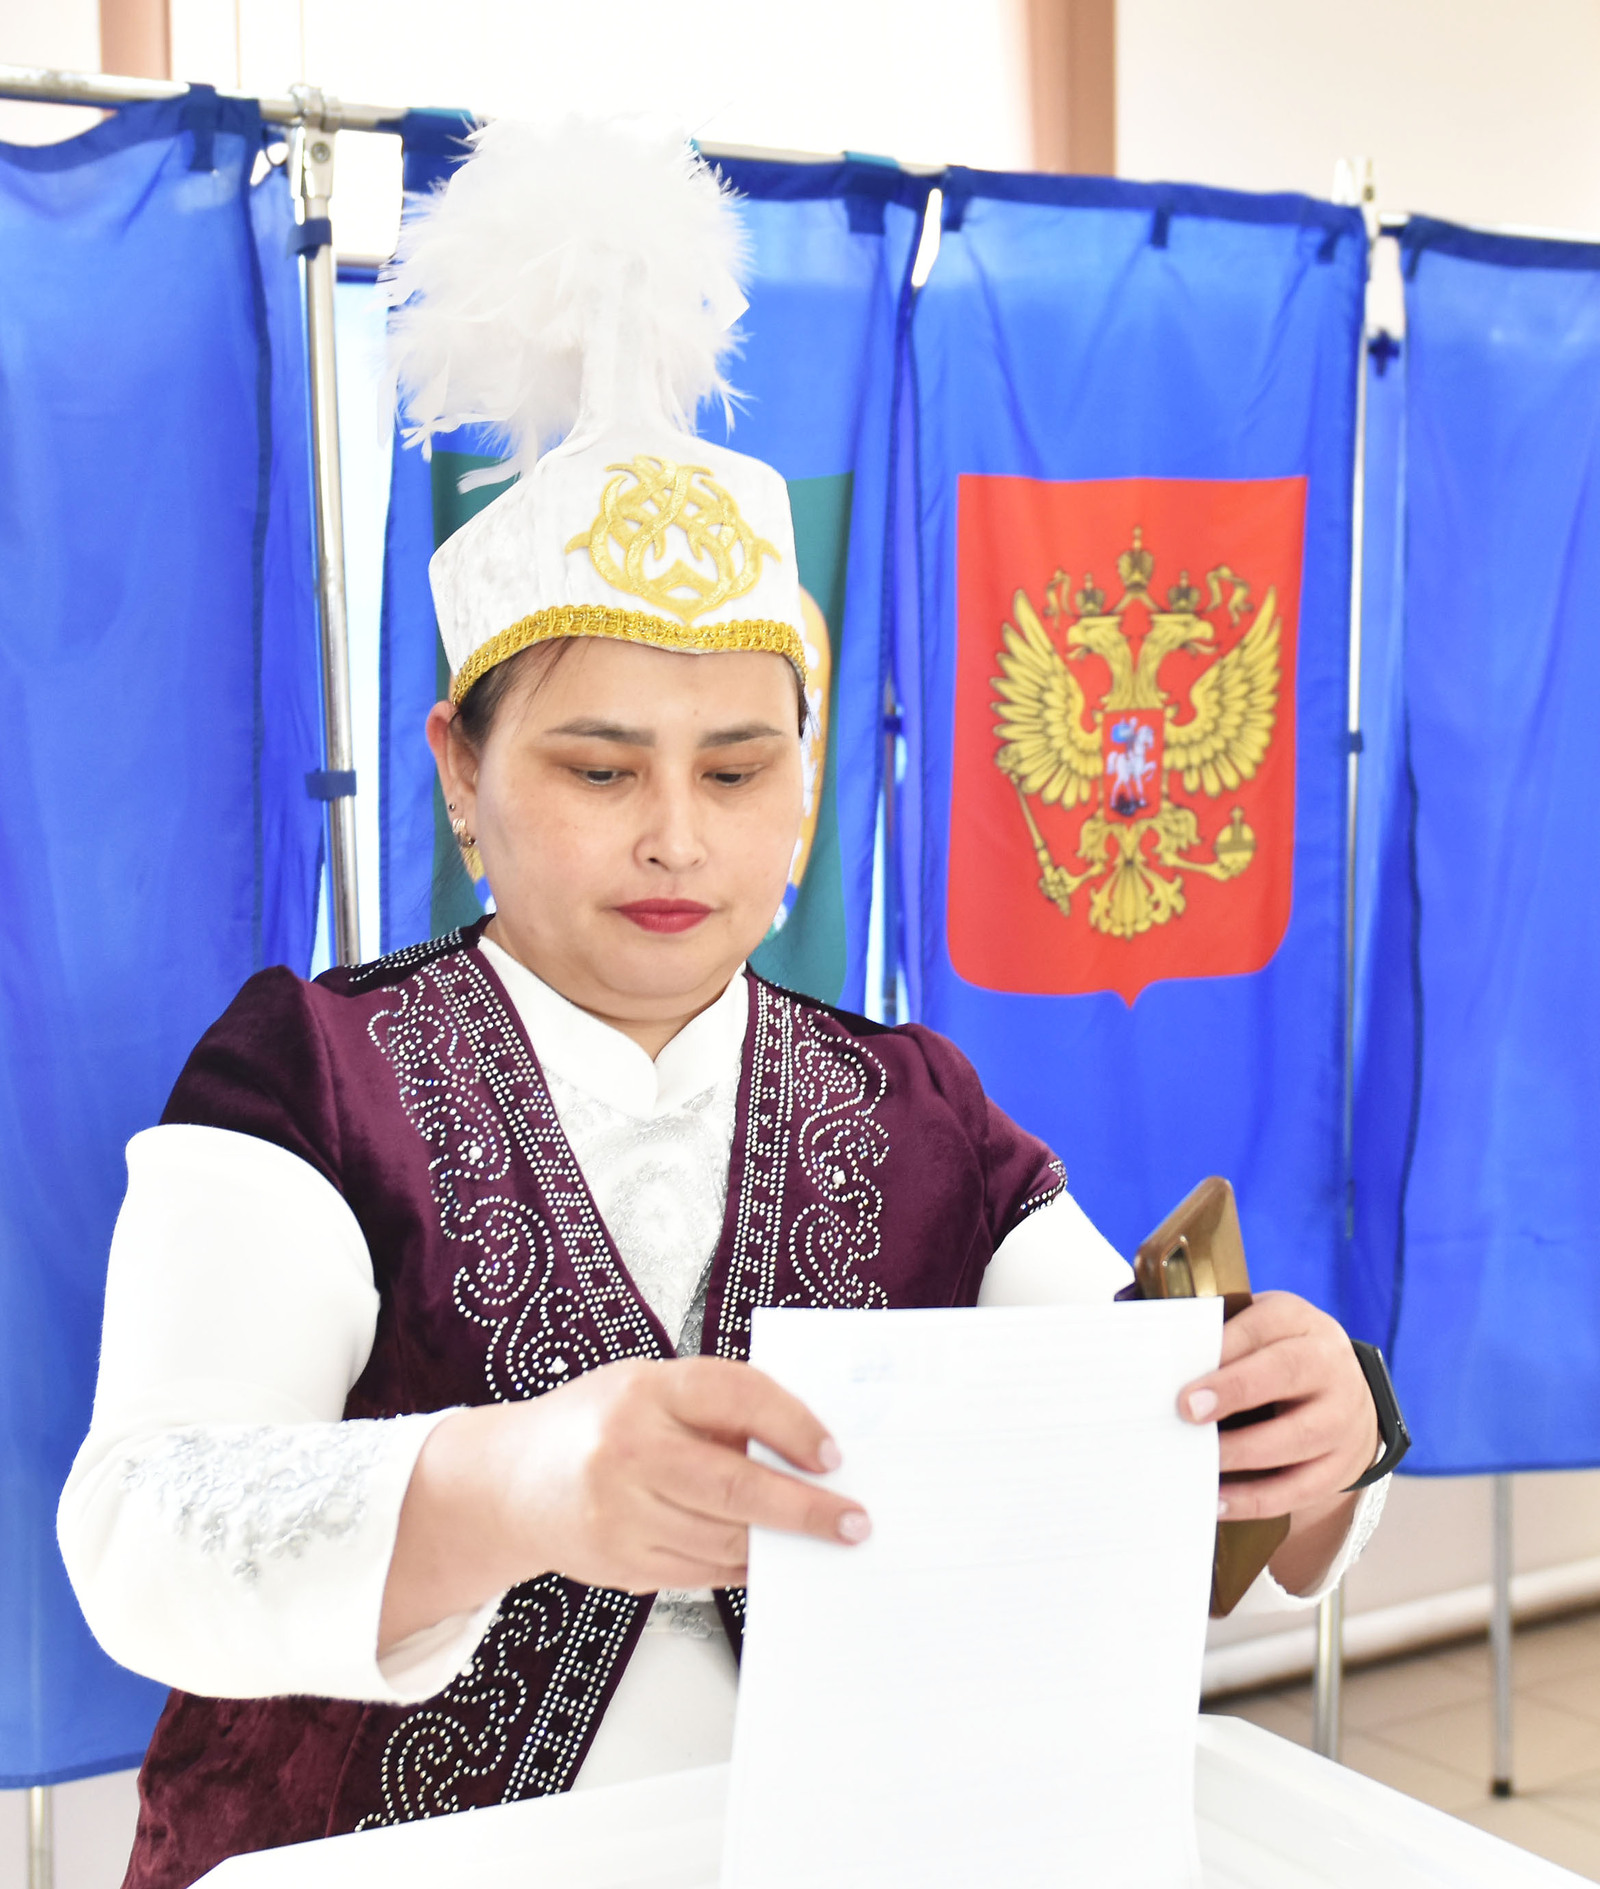 Жители Стерлитамакского района голосуют в национальных костюмах